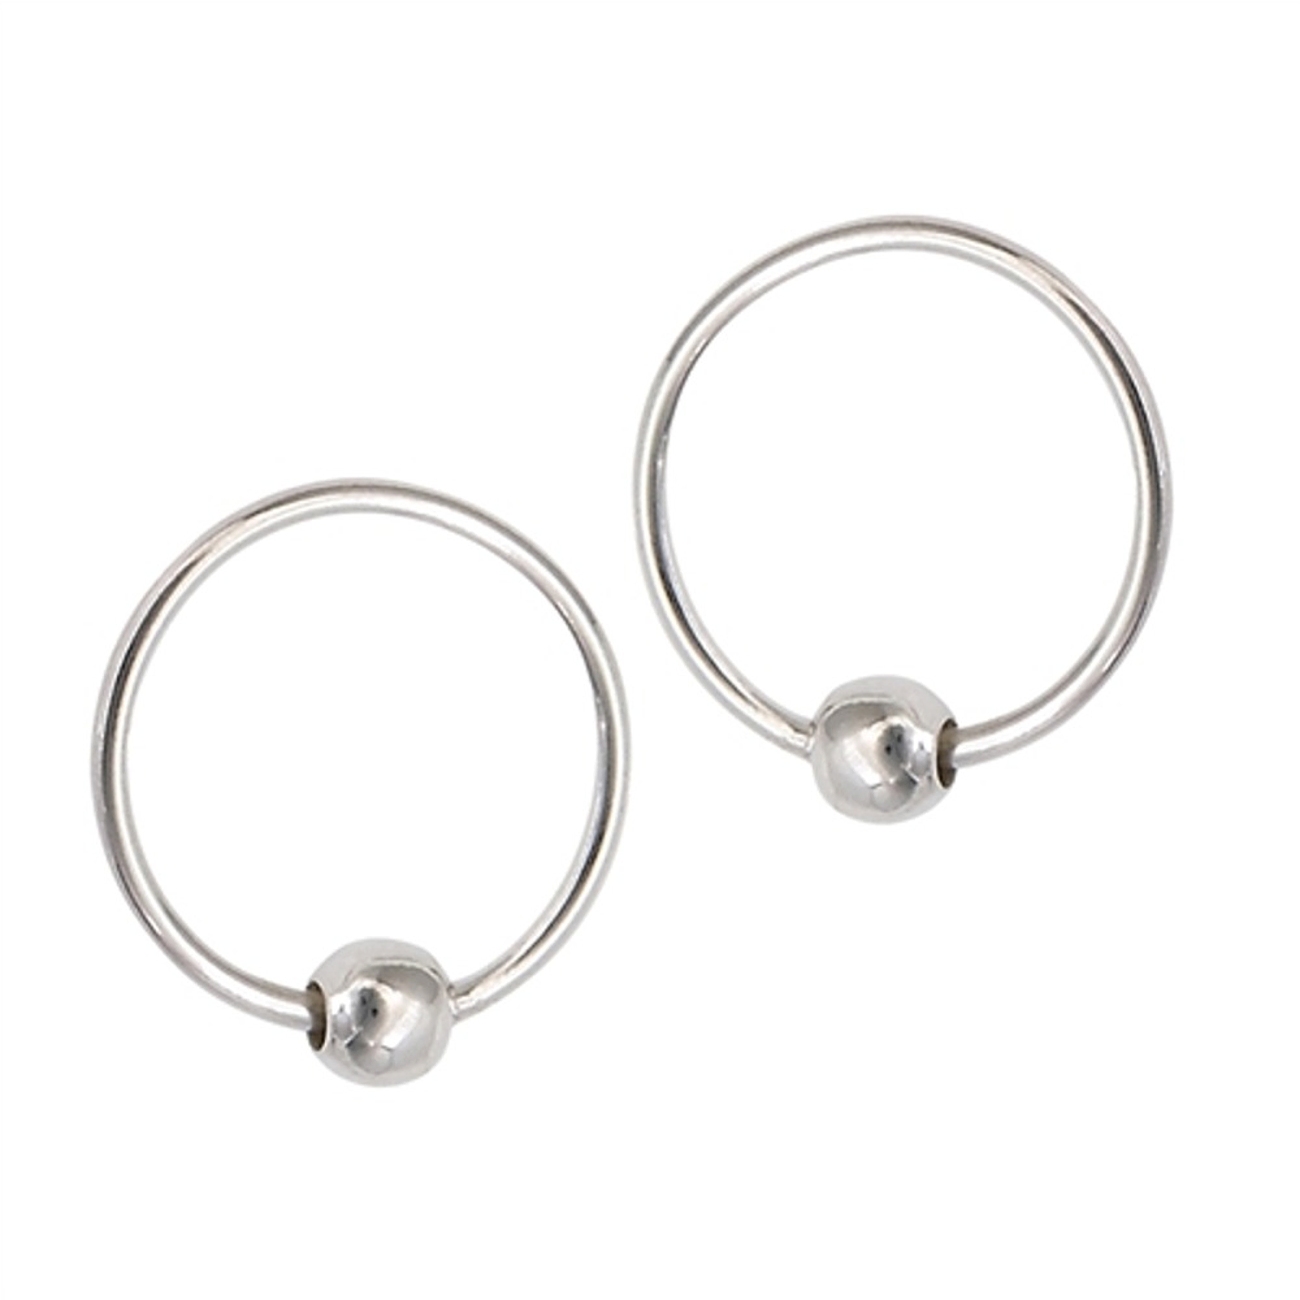 Sterling Silver 10mm Diameter Endless Hoop Earrings : Aunties Treasures ...